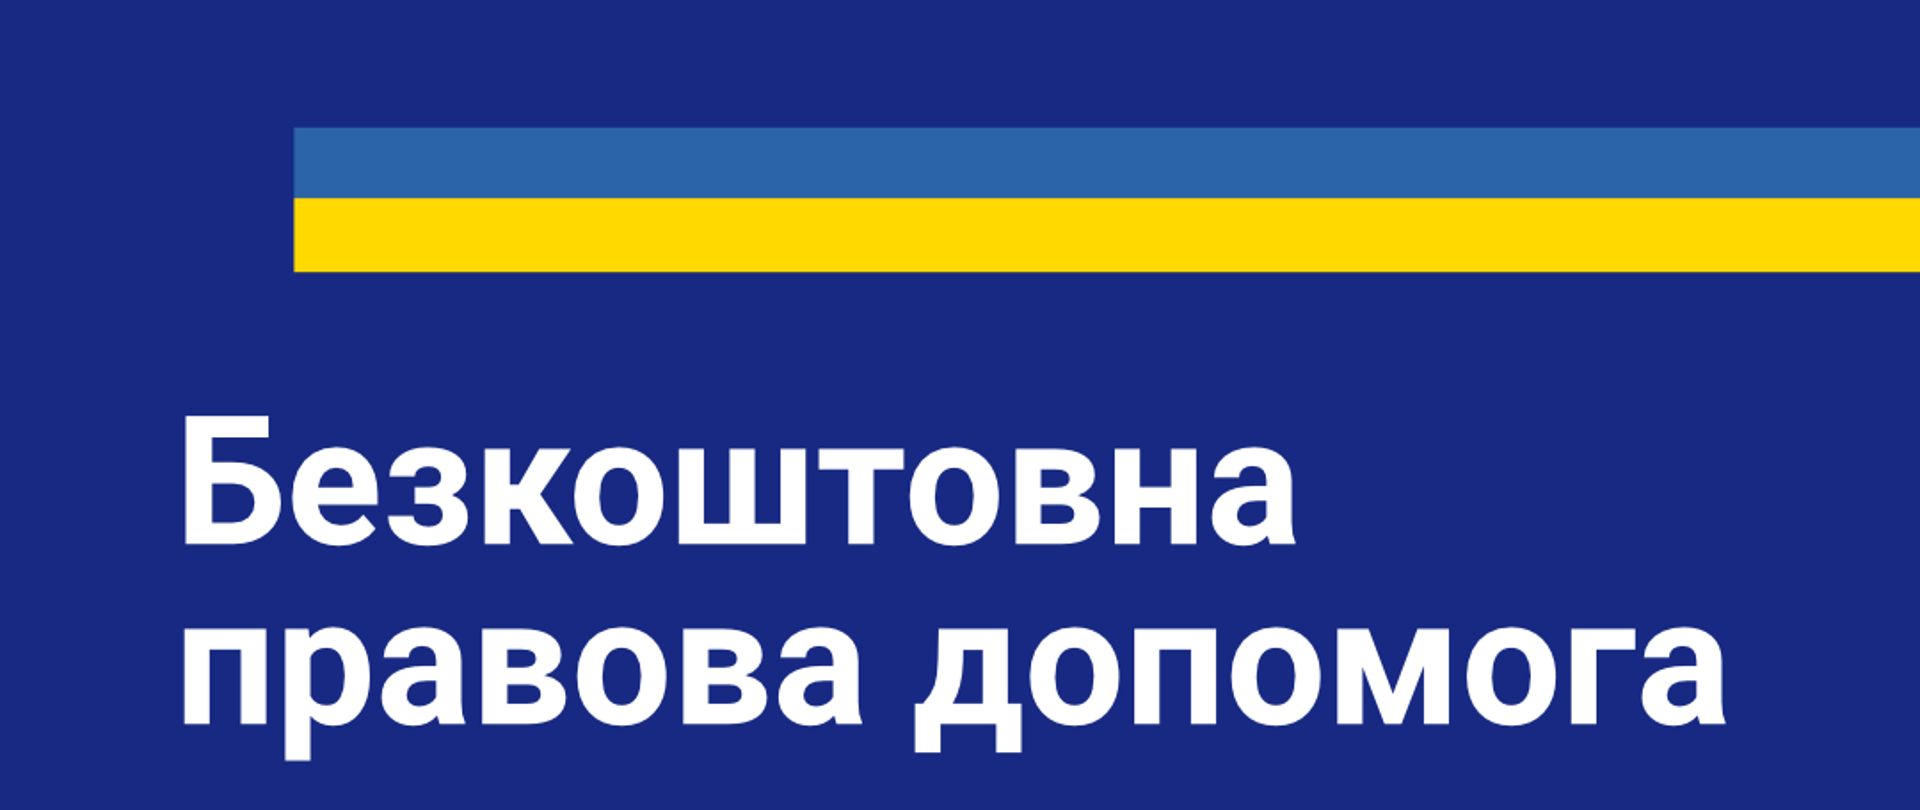 Zdjęcie zawiera tekst "bezpłatna pomoc prawna" w języku polskim i ukraińskim na granatowym tle z wstawką barw narodowych Ukrainy. 